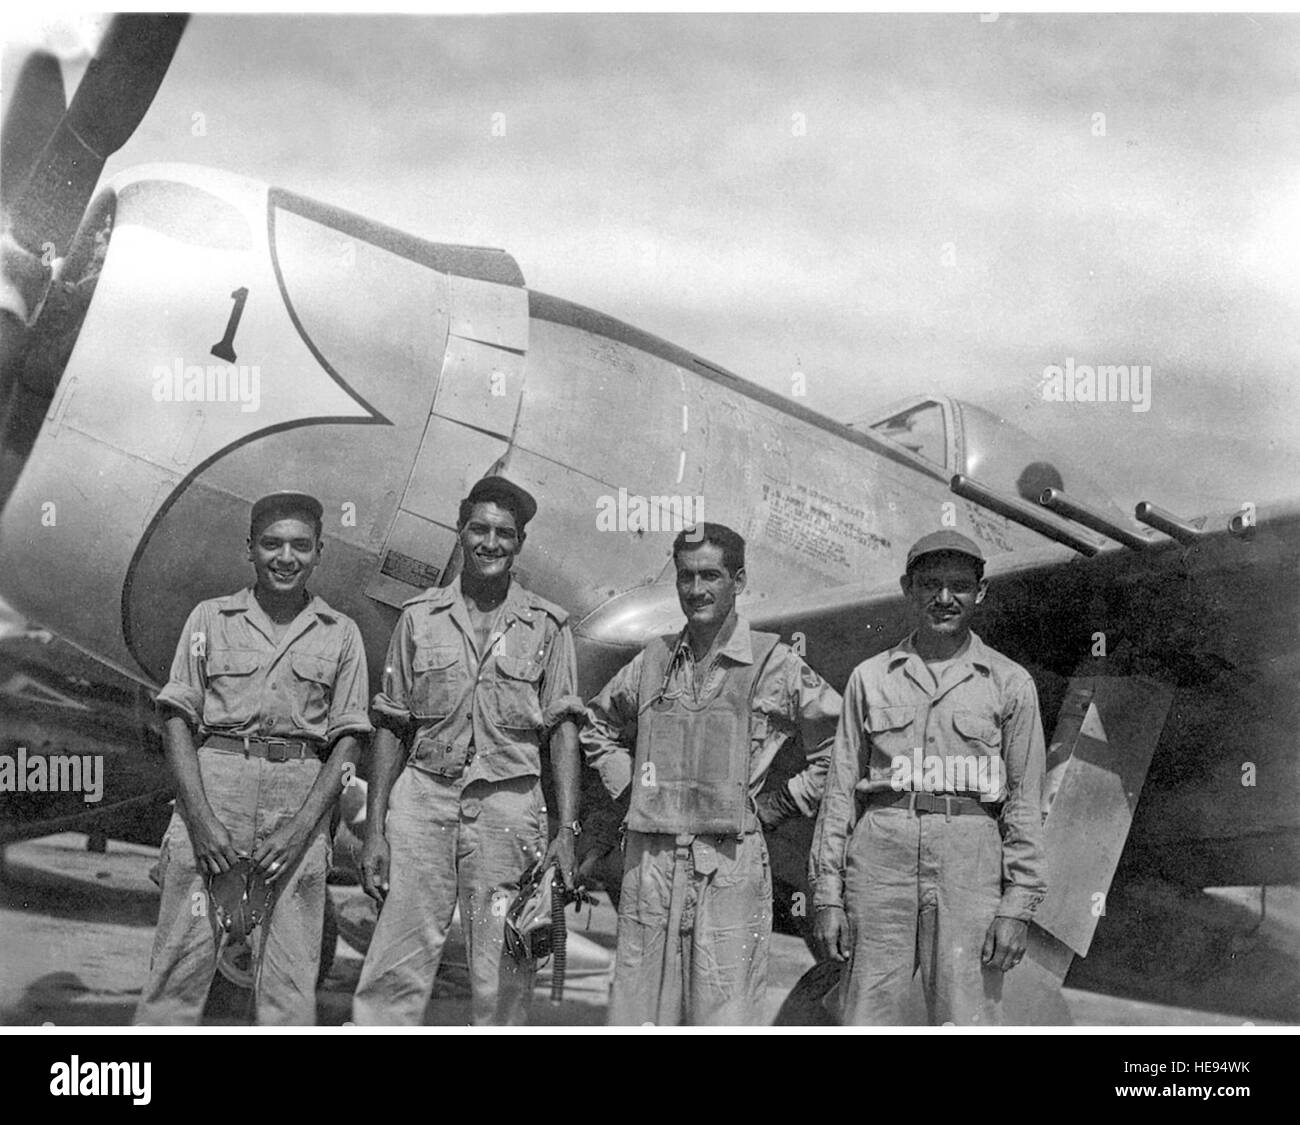 Mexikanische Luftwaffe steht Capt Radames Gaxiola Andrade vor seinem P - 47D mit seinem Pflege-Team, nachdem er von einem Kampfeinsatz zurückgekehrt.  Die mexikanische Luftwaffe Escuadrón 201 war Kapitän Andrade zugewiesen. Mitglieder der Escuadrón 201 kämpften an der Seite der US-Truppen während des zweiten Weltkriegs. Stockfoto